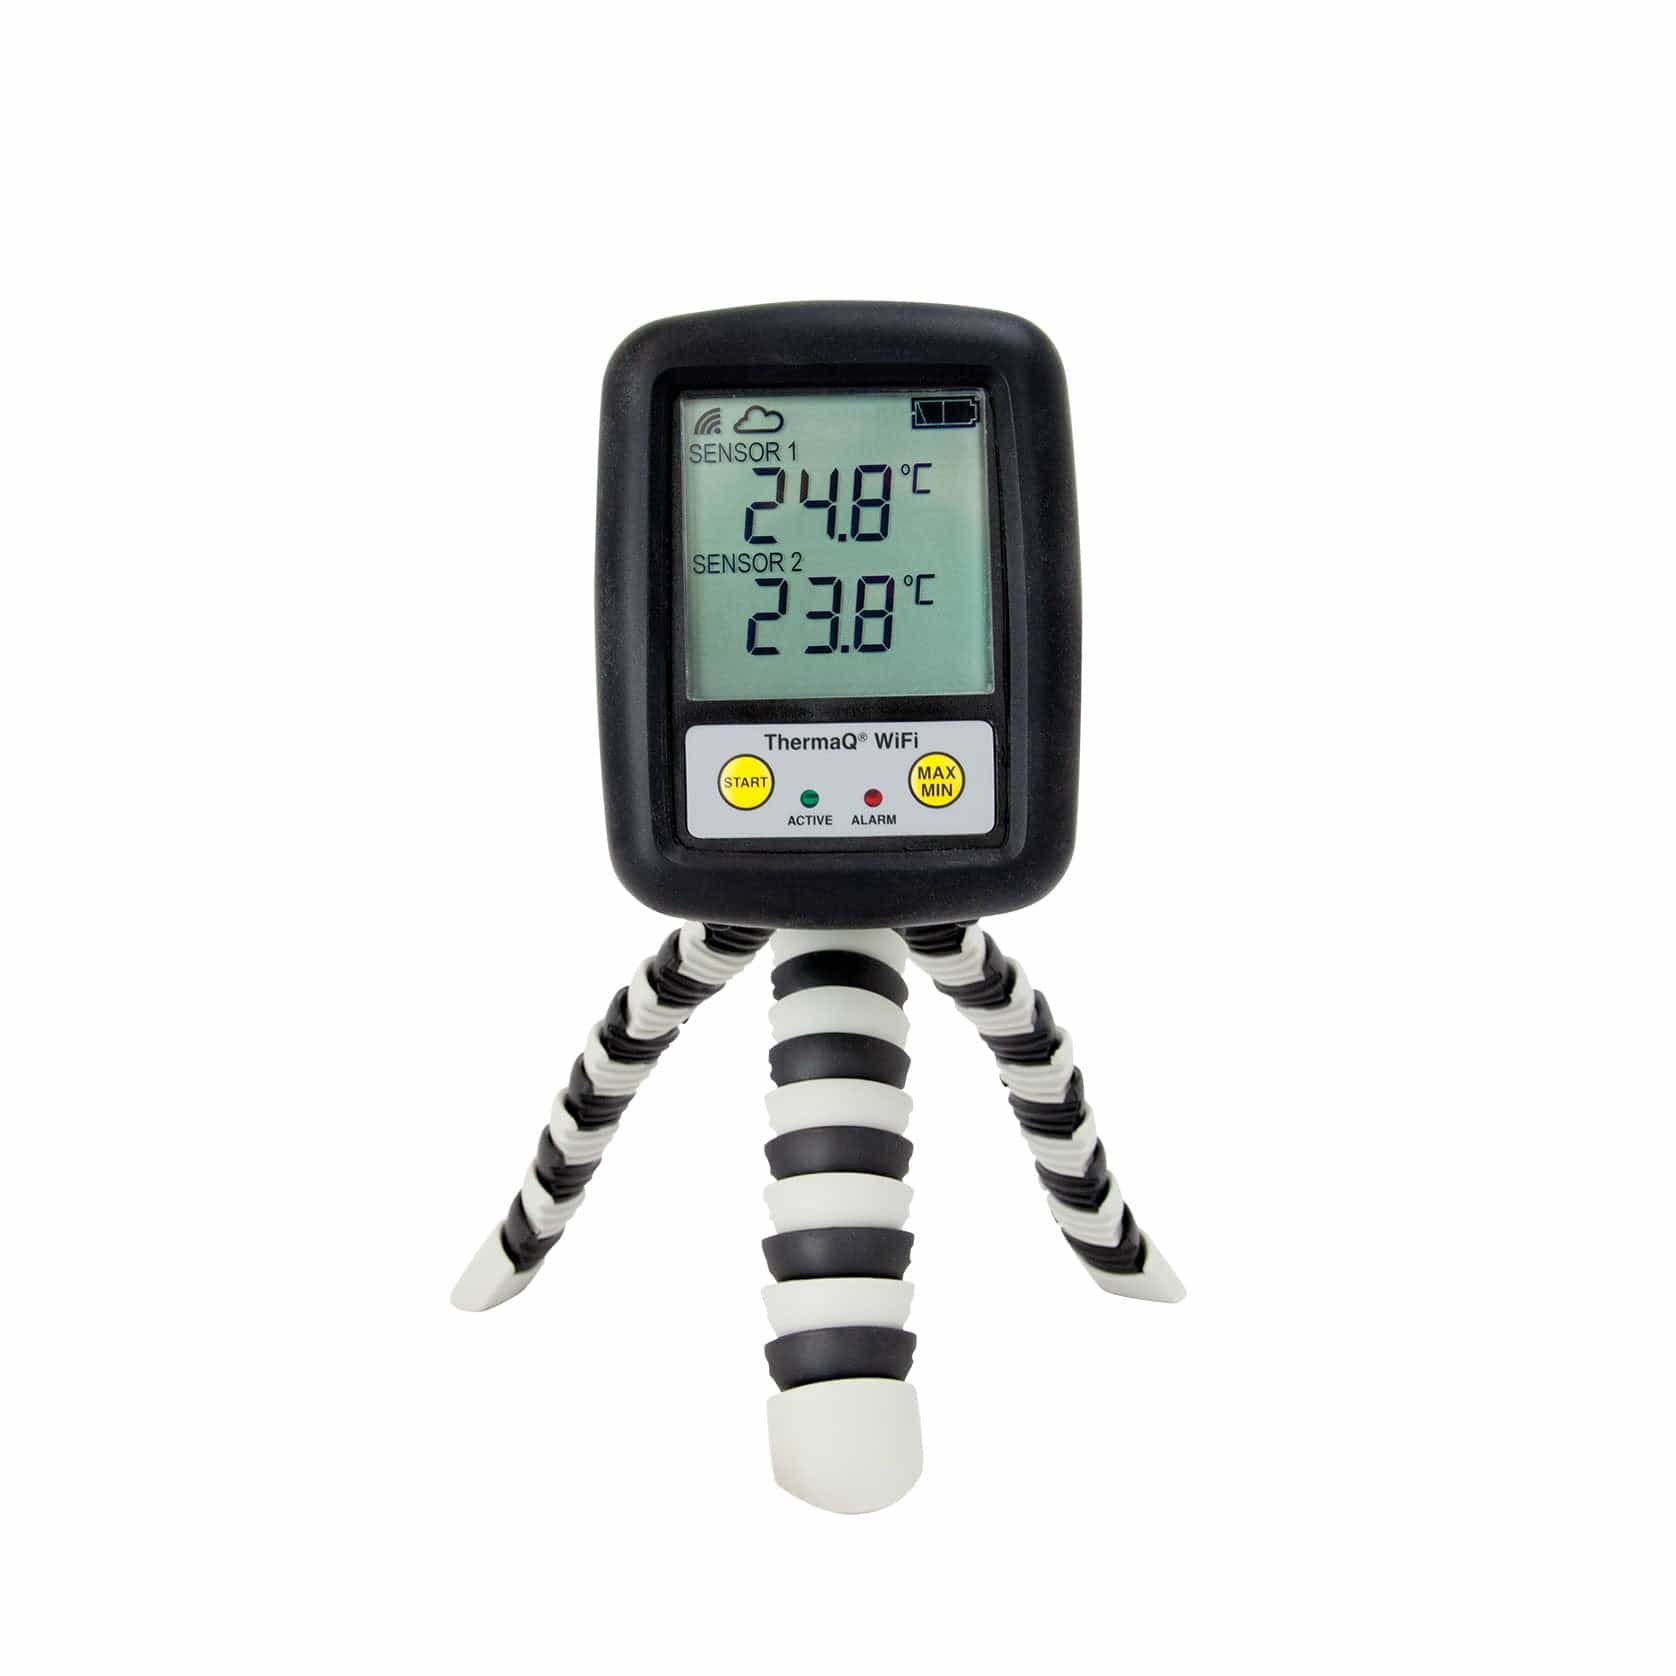 un Thermomètre et enregistreur de barbecue professionnel ThermaQ WiFi noir et blanc de Thermometre.fr sur un support.